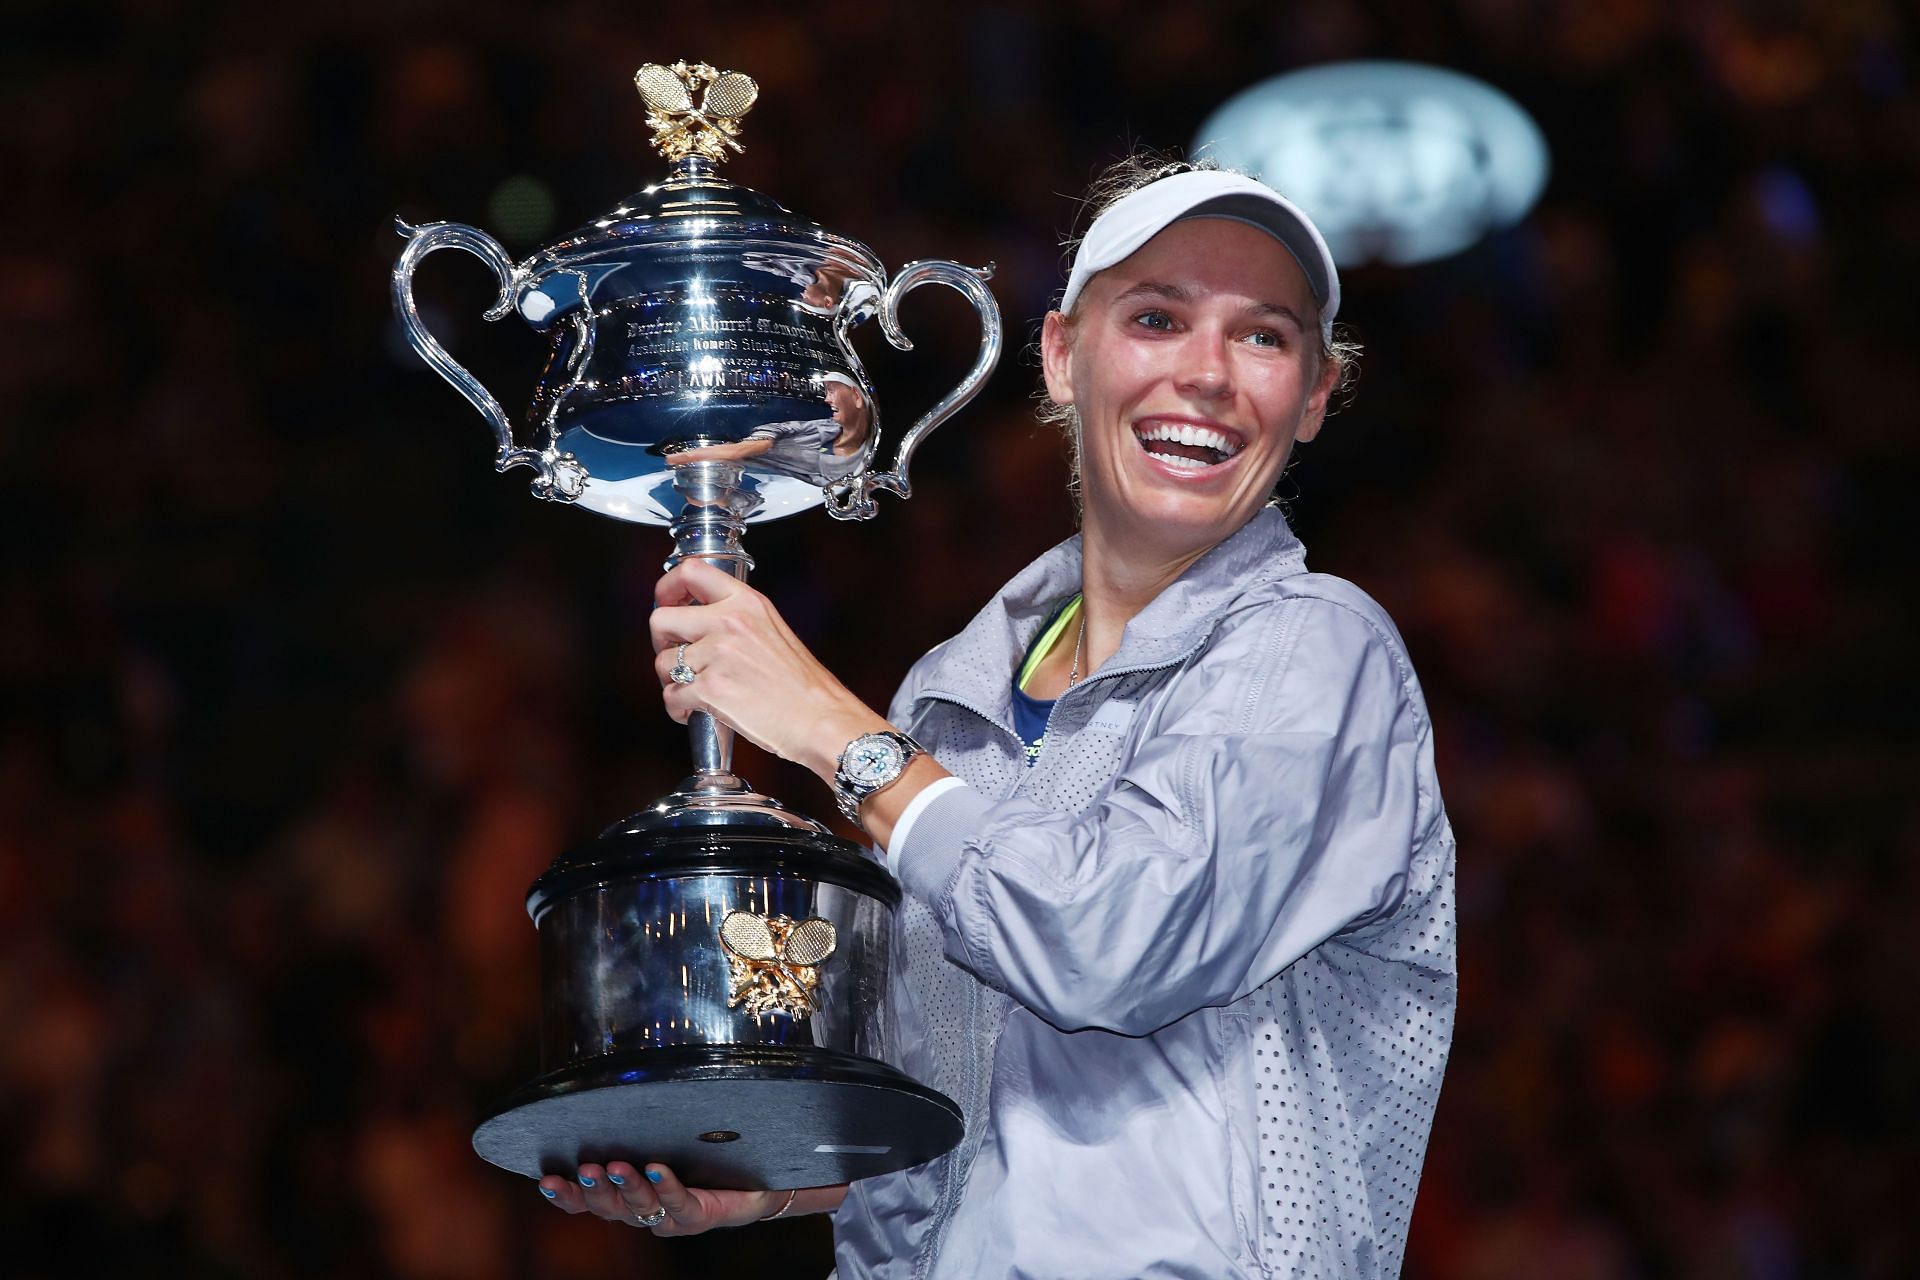 Wozniacki with the 2018 Australian Open trophy